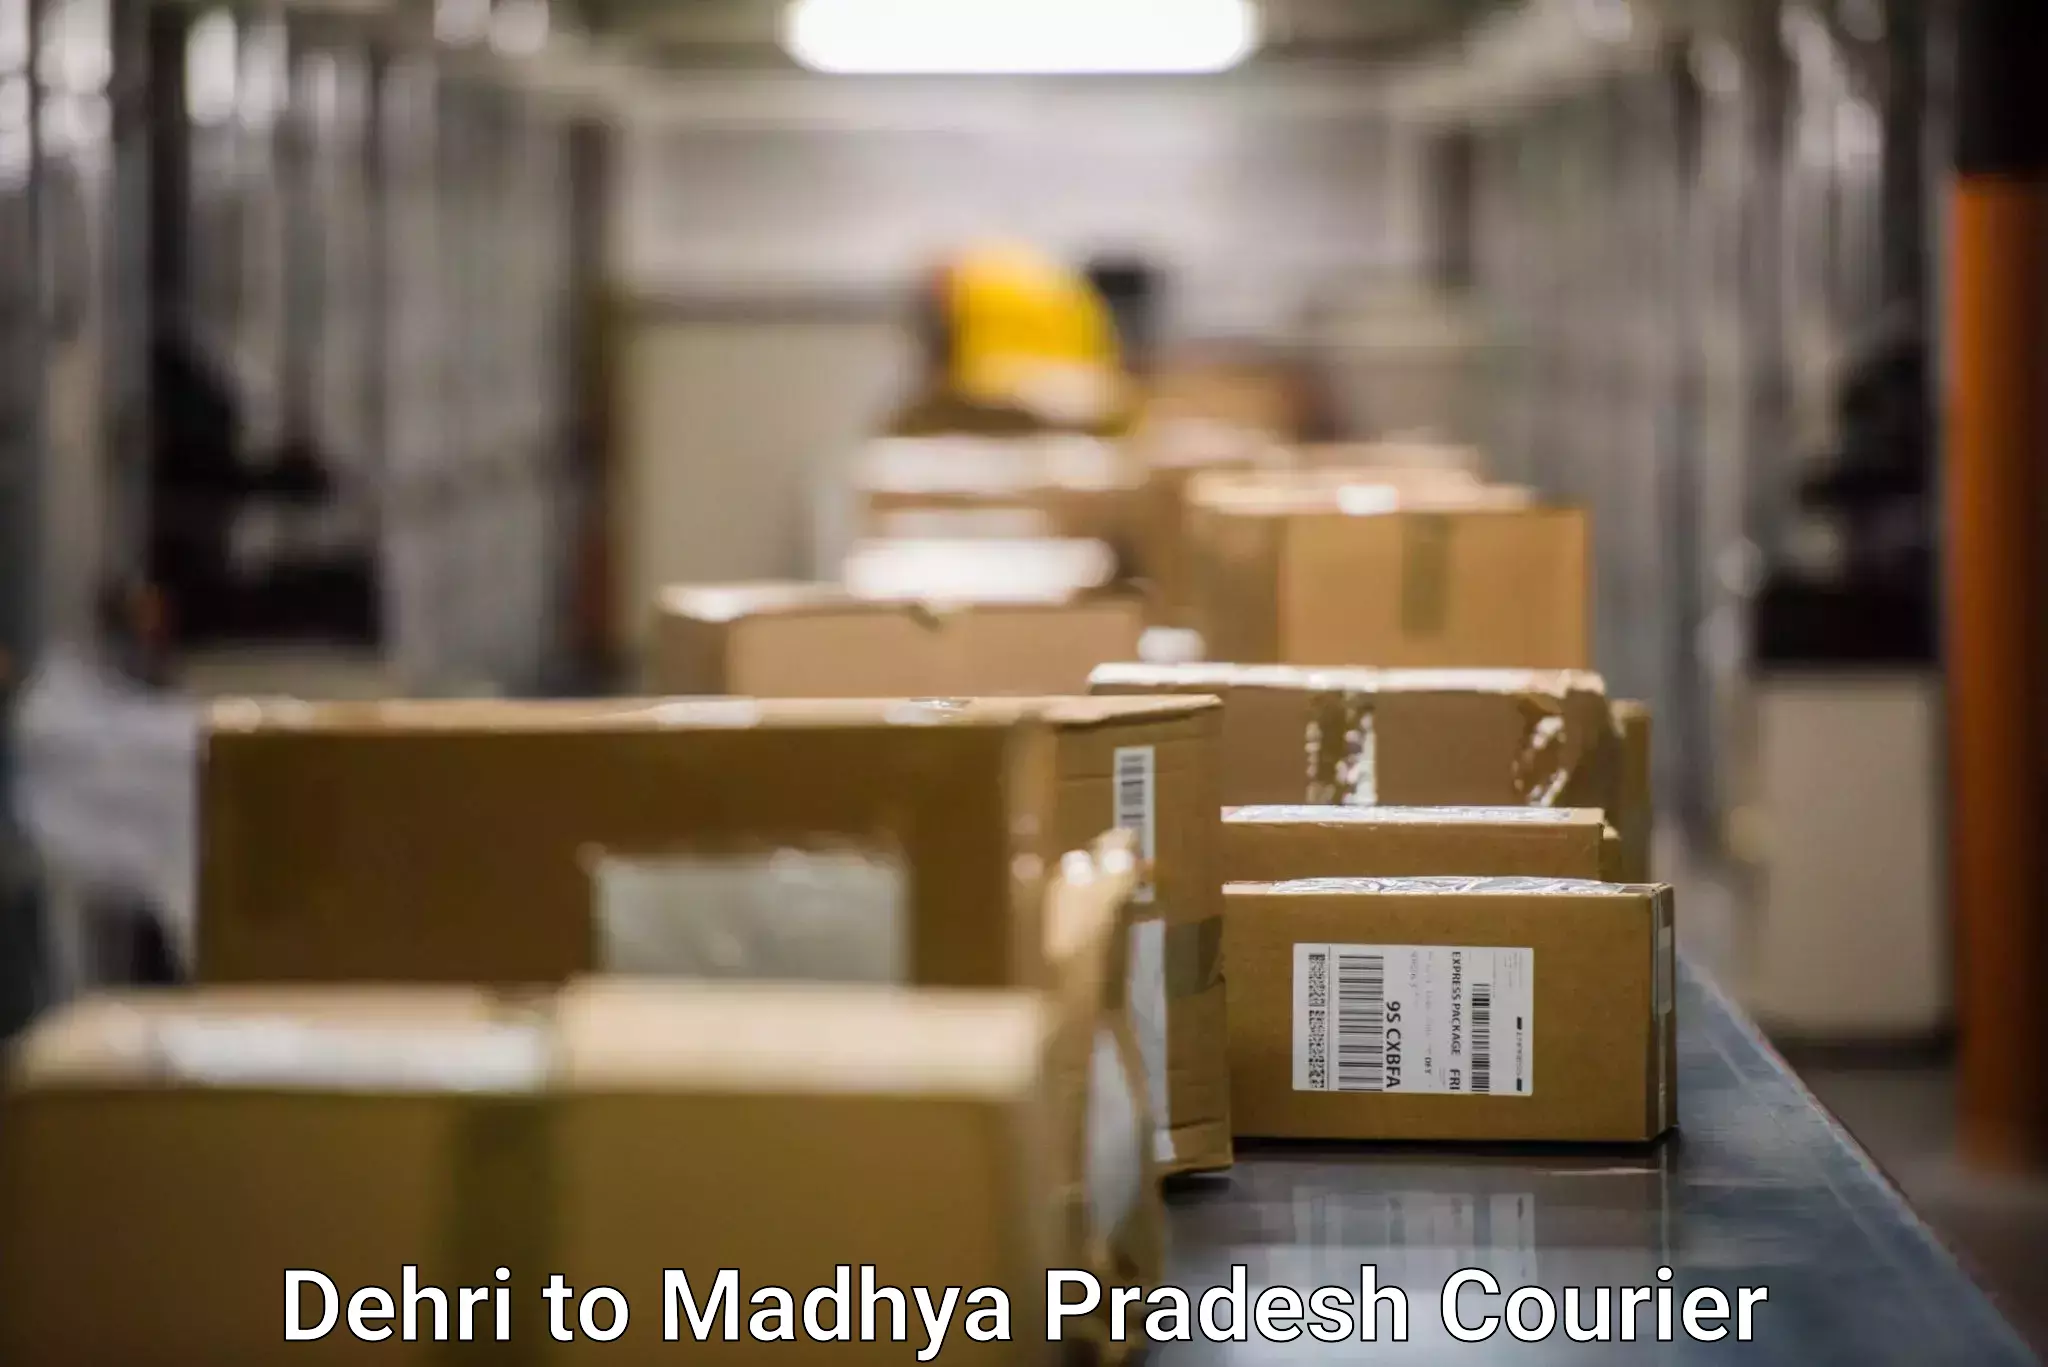 Efficient parcel delivery in Dehri to Maheshwar